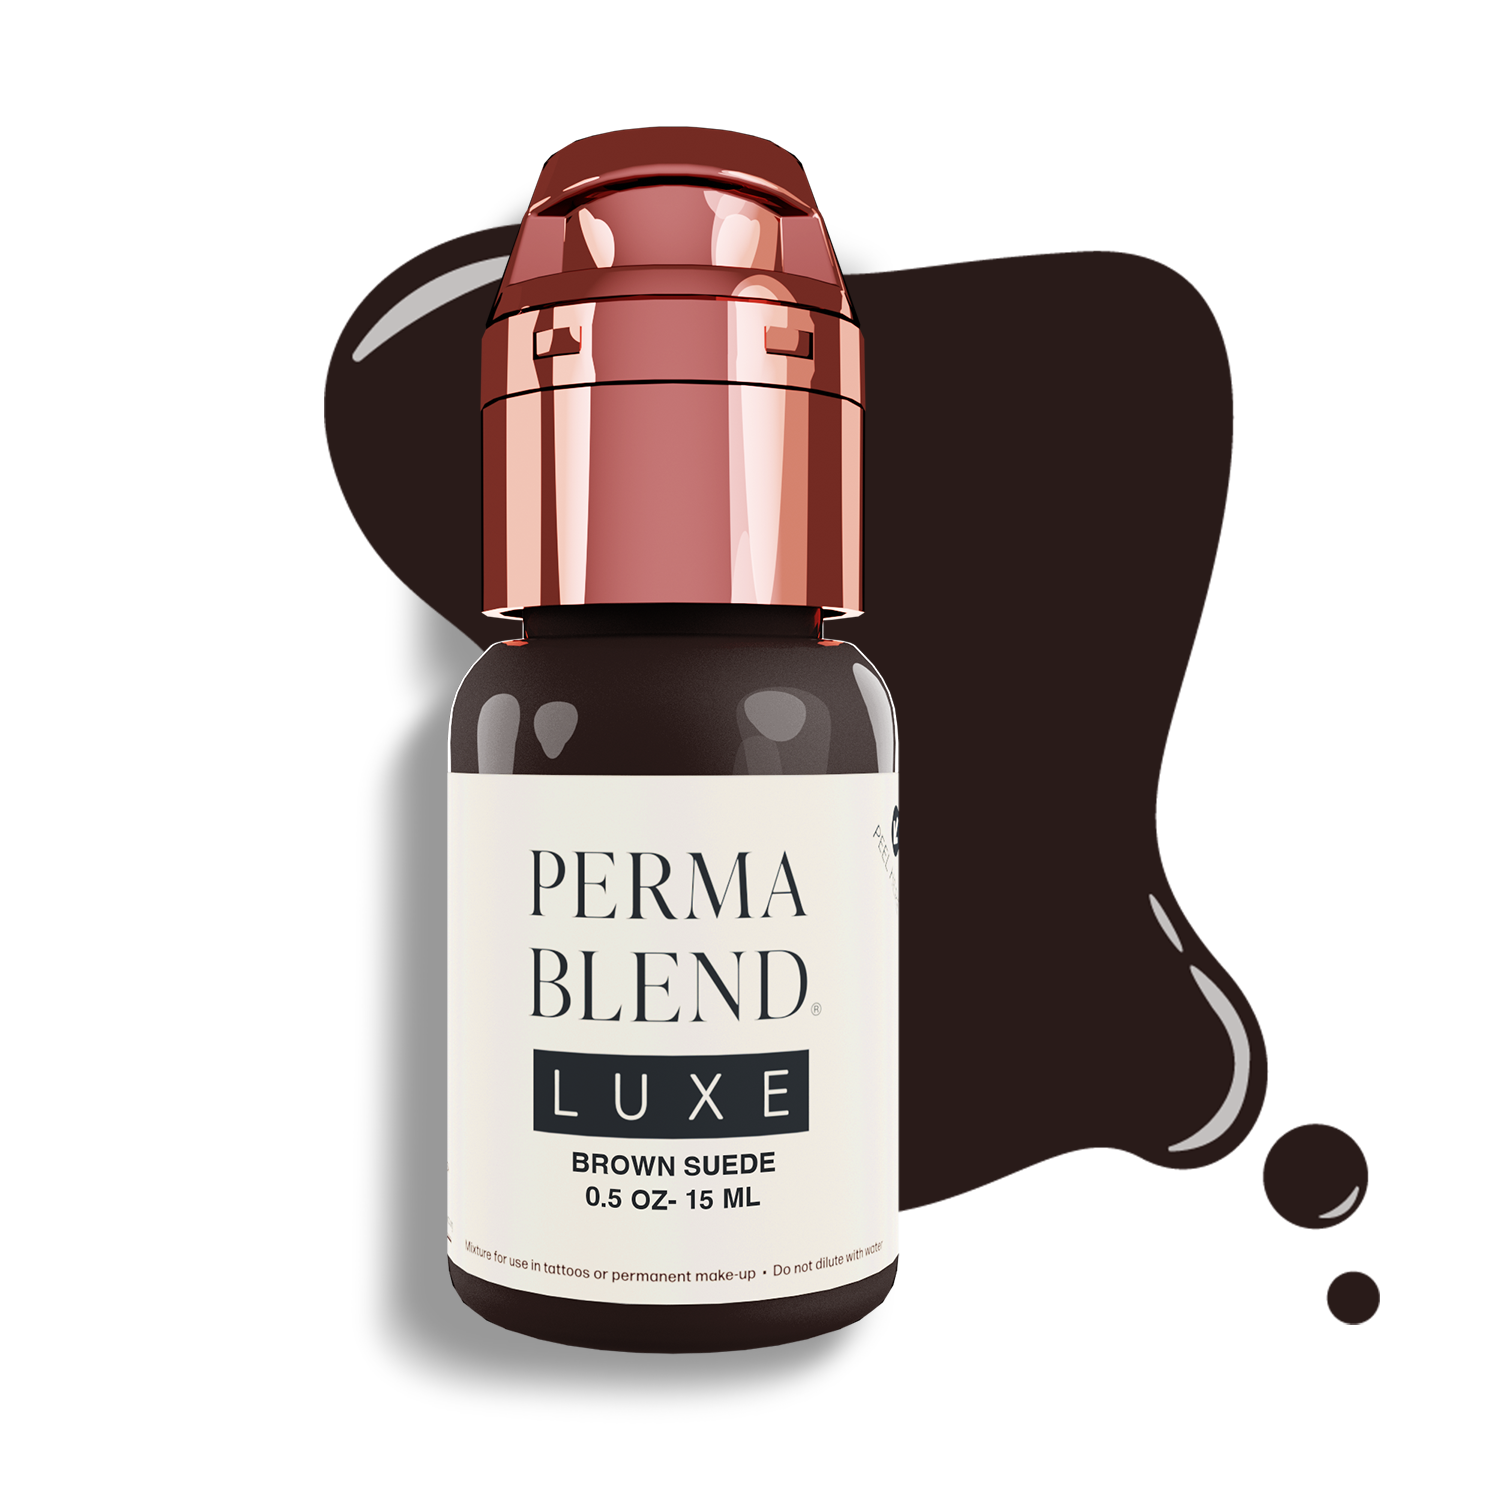 Perma Blend Luxe PMU Ink | Brown Suede | Brows | 15 ml 